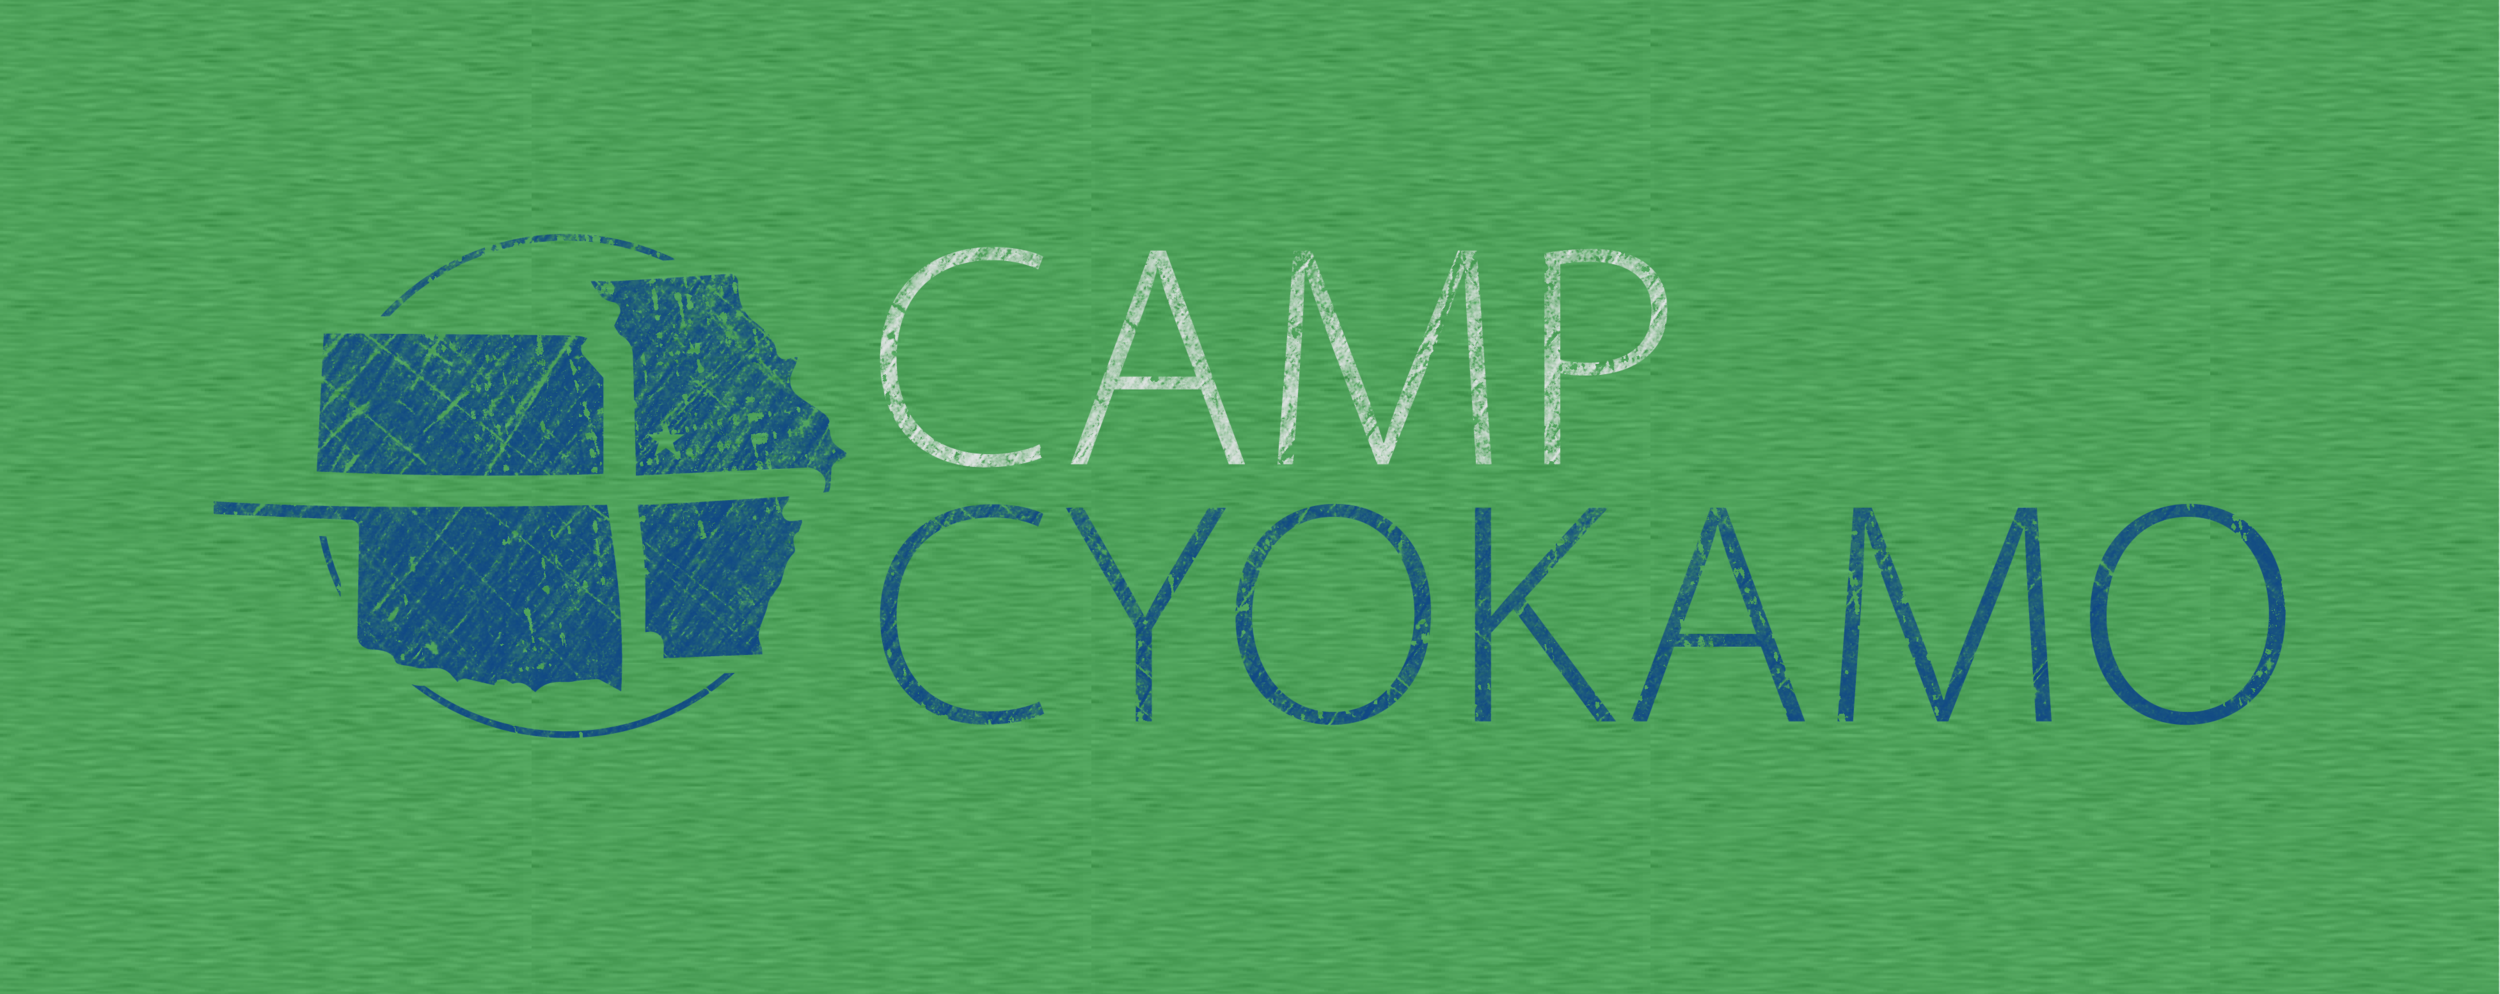 Cyokamo Logo_Green-01.png